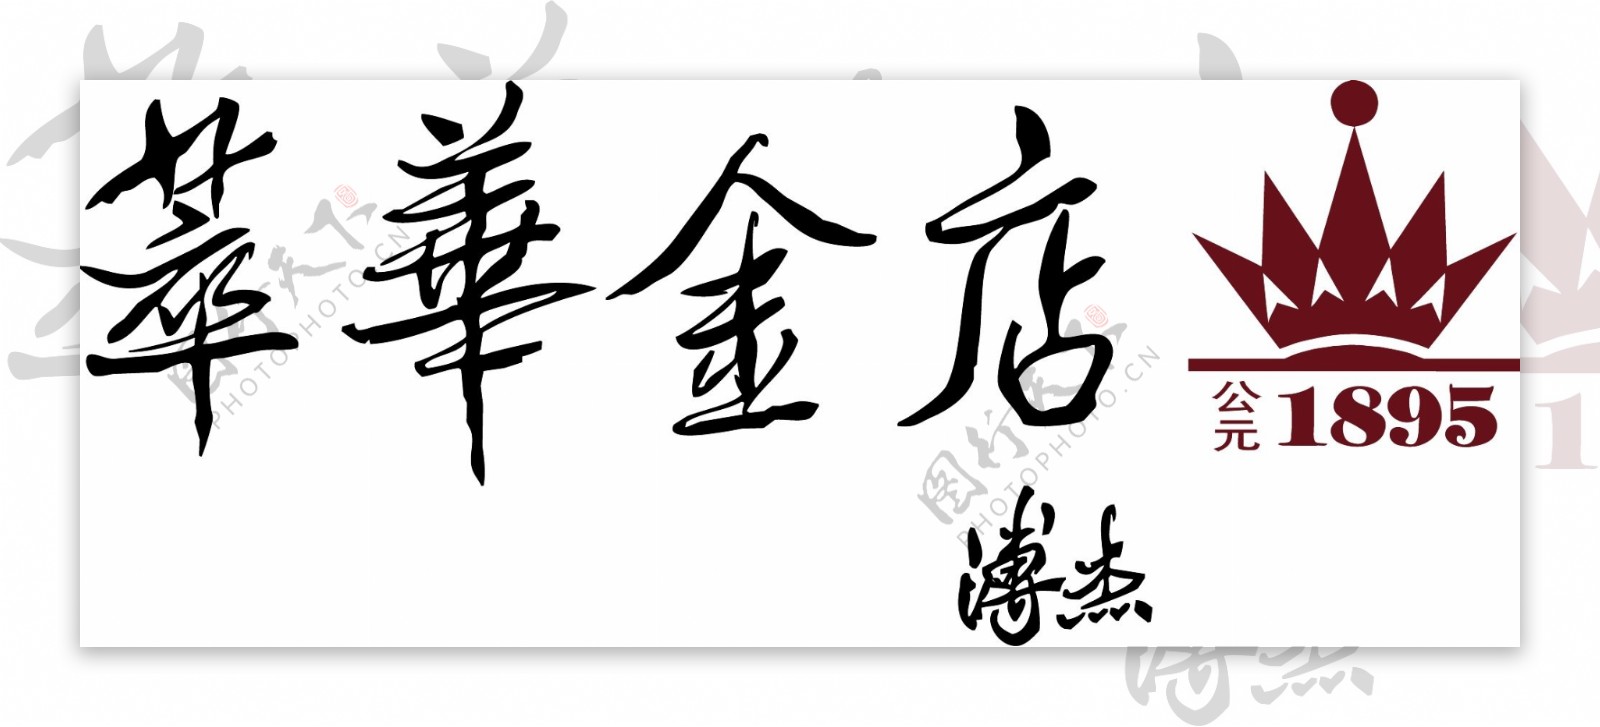 萃华金店矢量logo图片